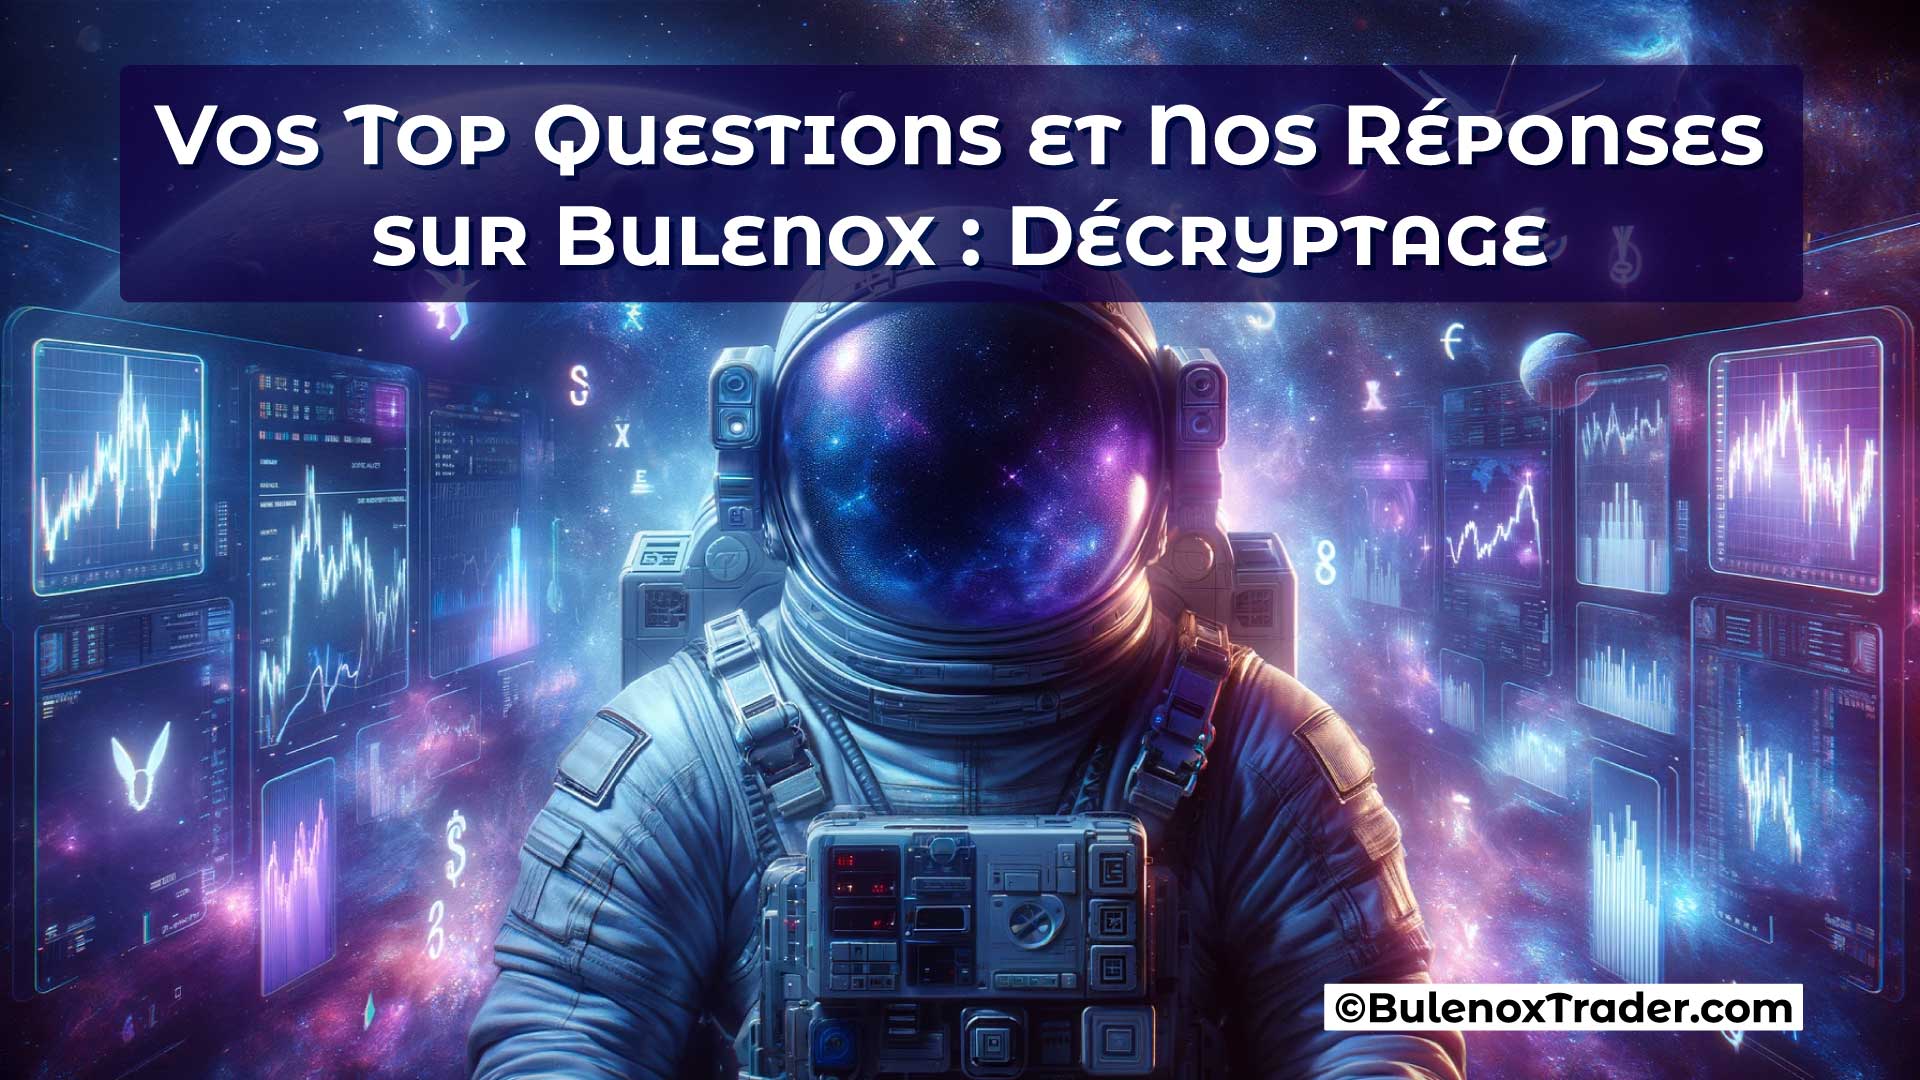 Vos-Top-Questions-et-Nos-Réponses-sur-Bulenox-Décryptage-on-Bulenox-Trader-Website